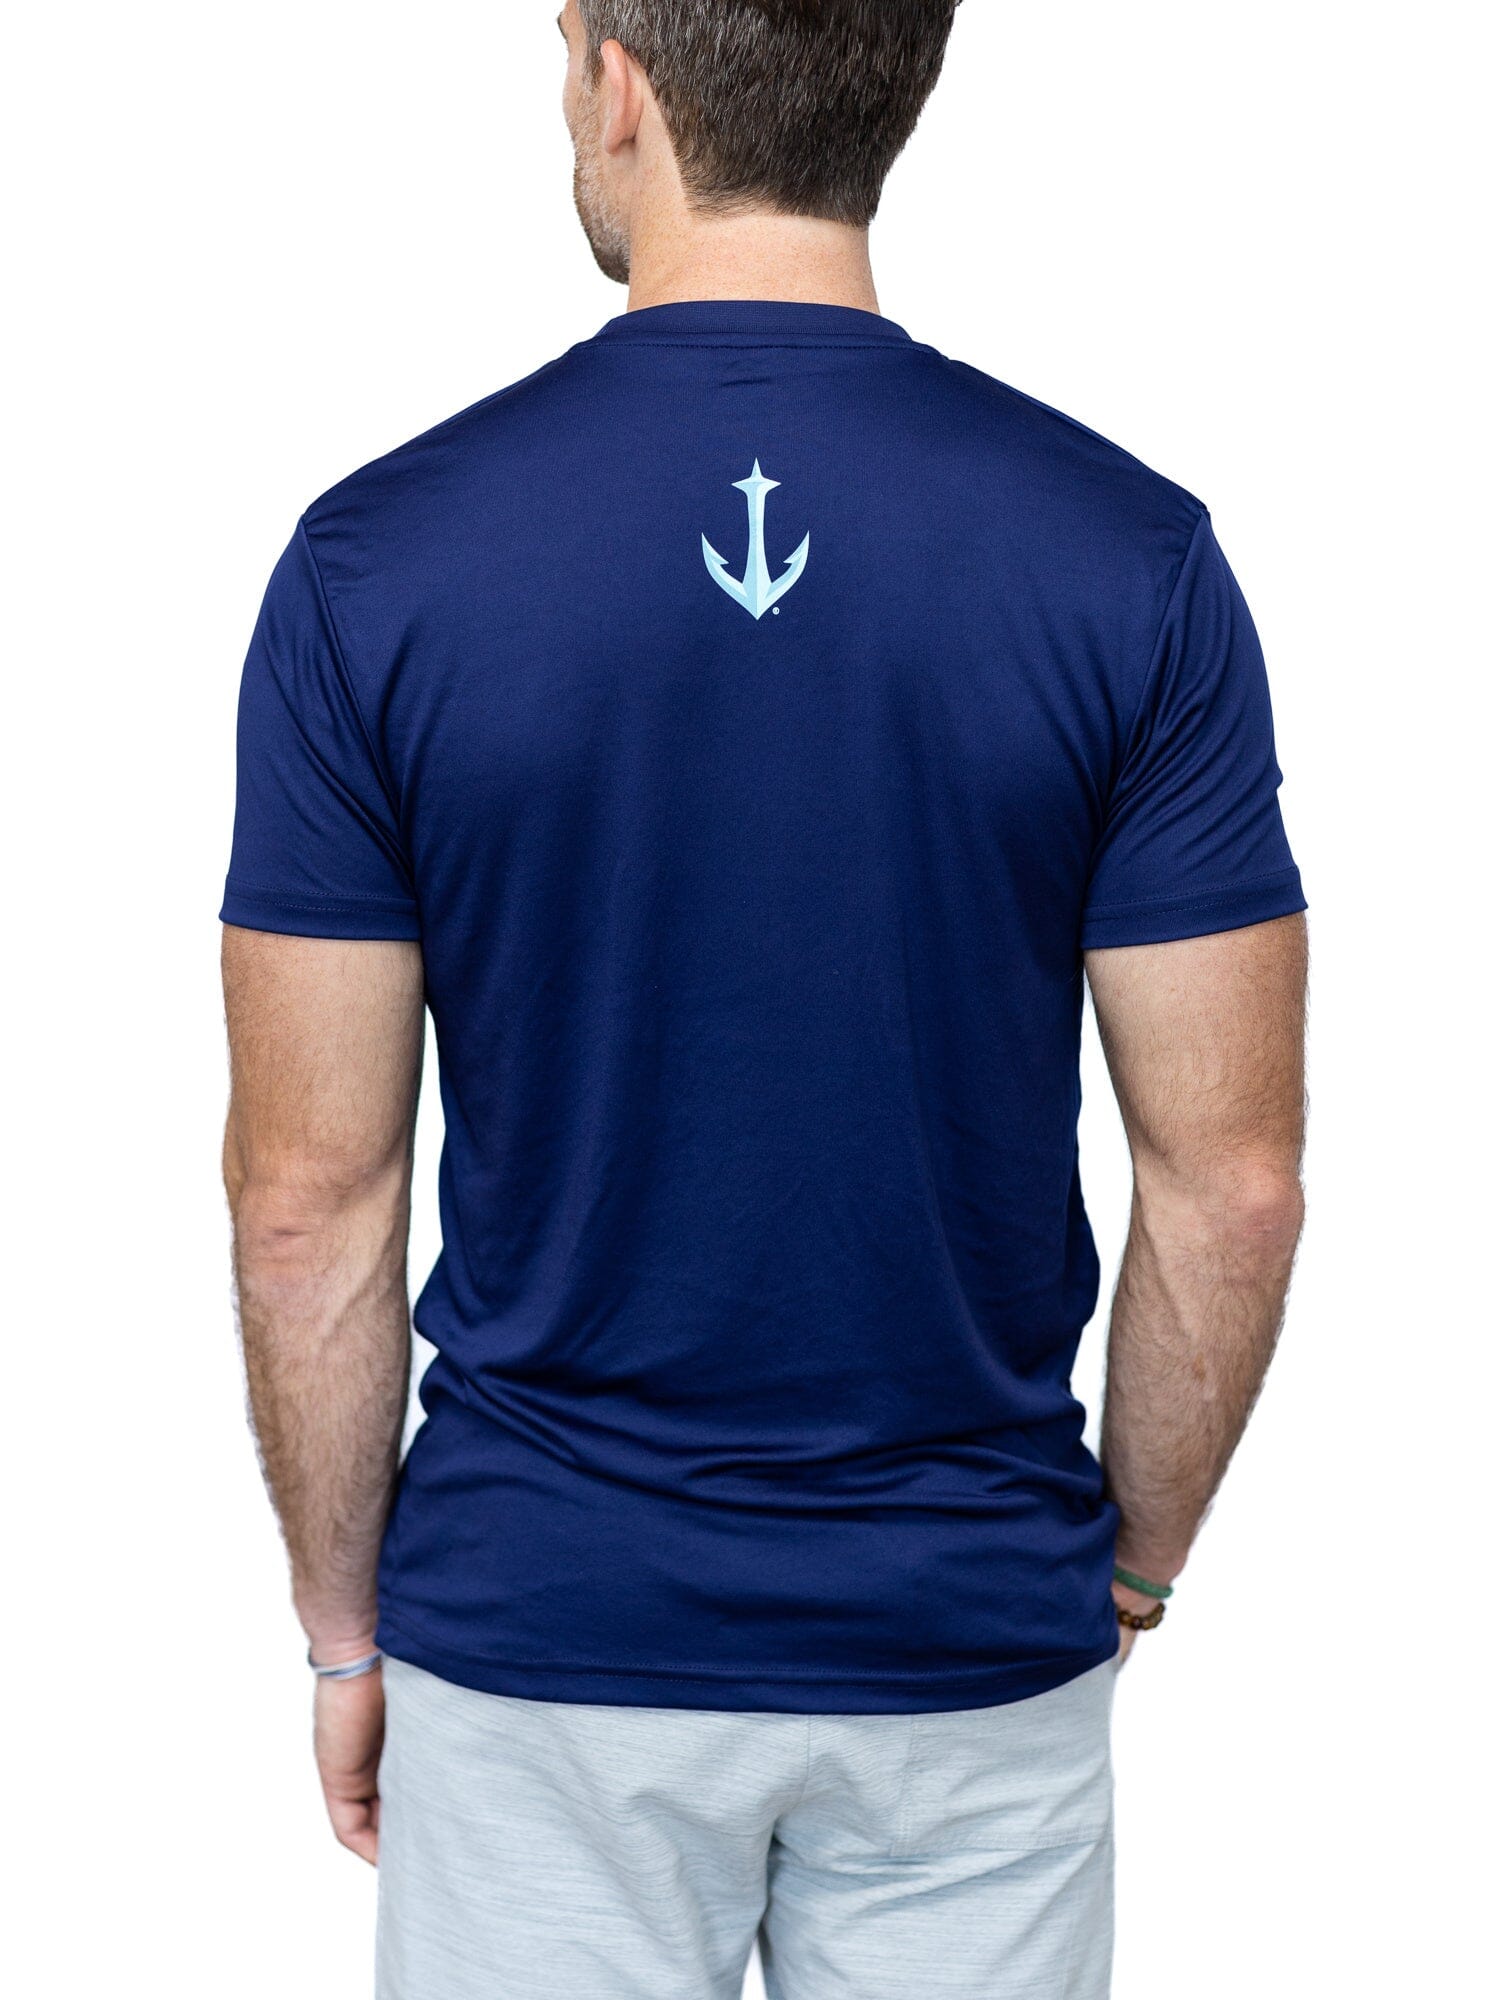 What's Kraken? Black Mens/Unisex Long Sleeve T-Shirt - Size Medium